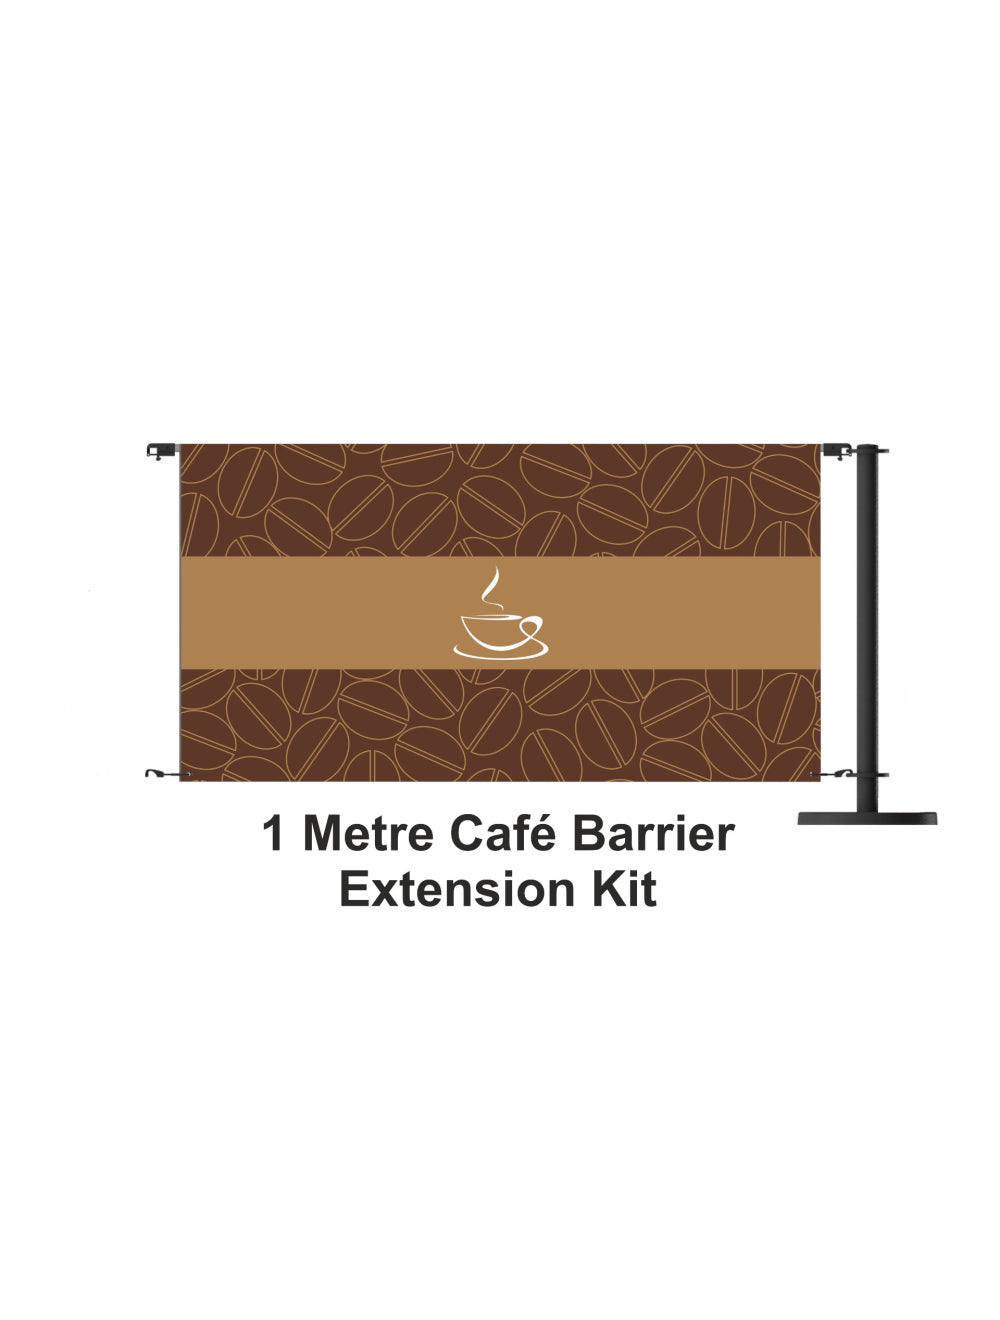 Комплект для удлинения барьера кафе на 1 метр